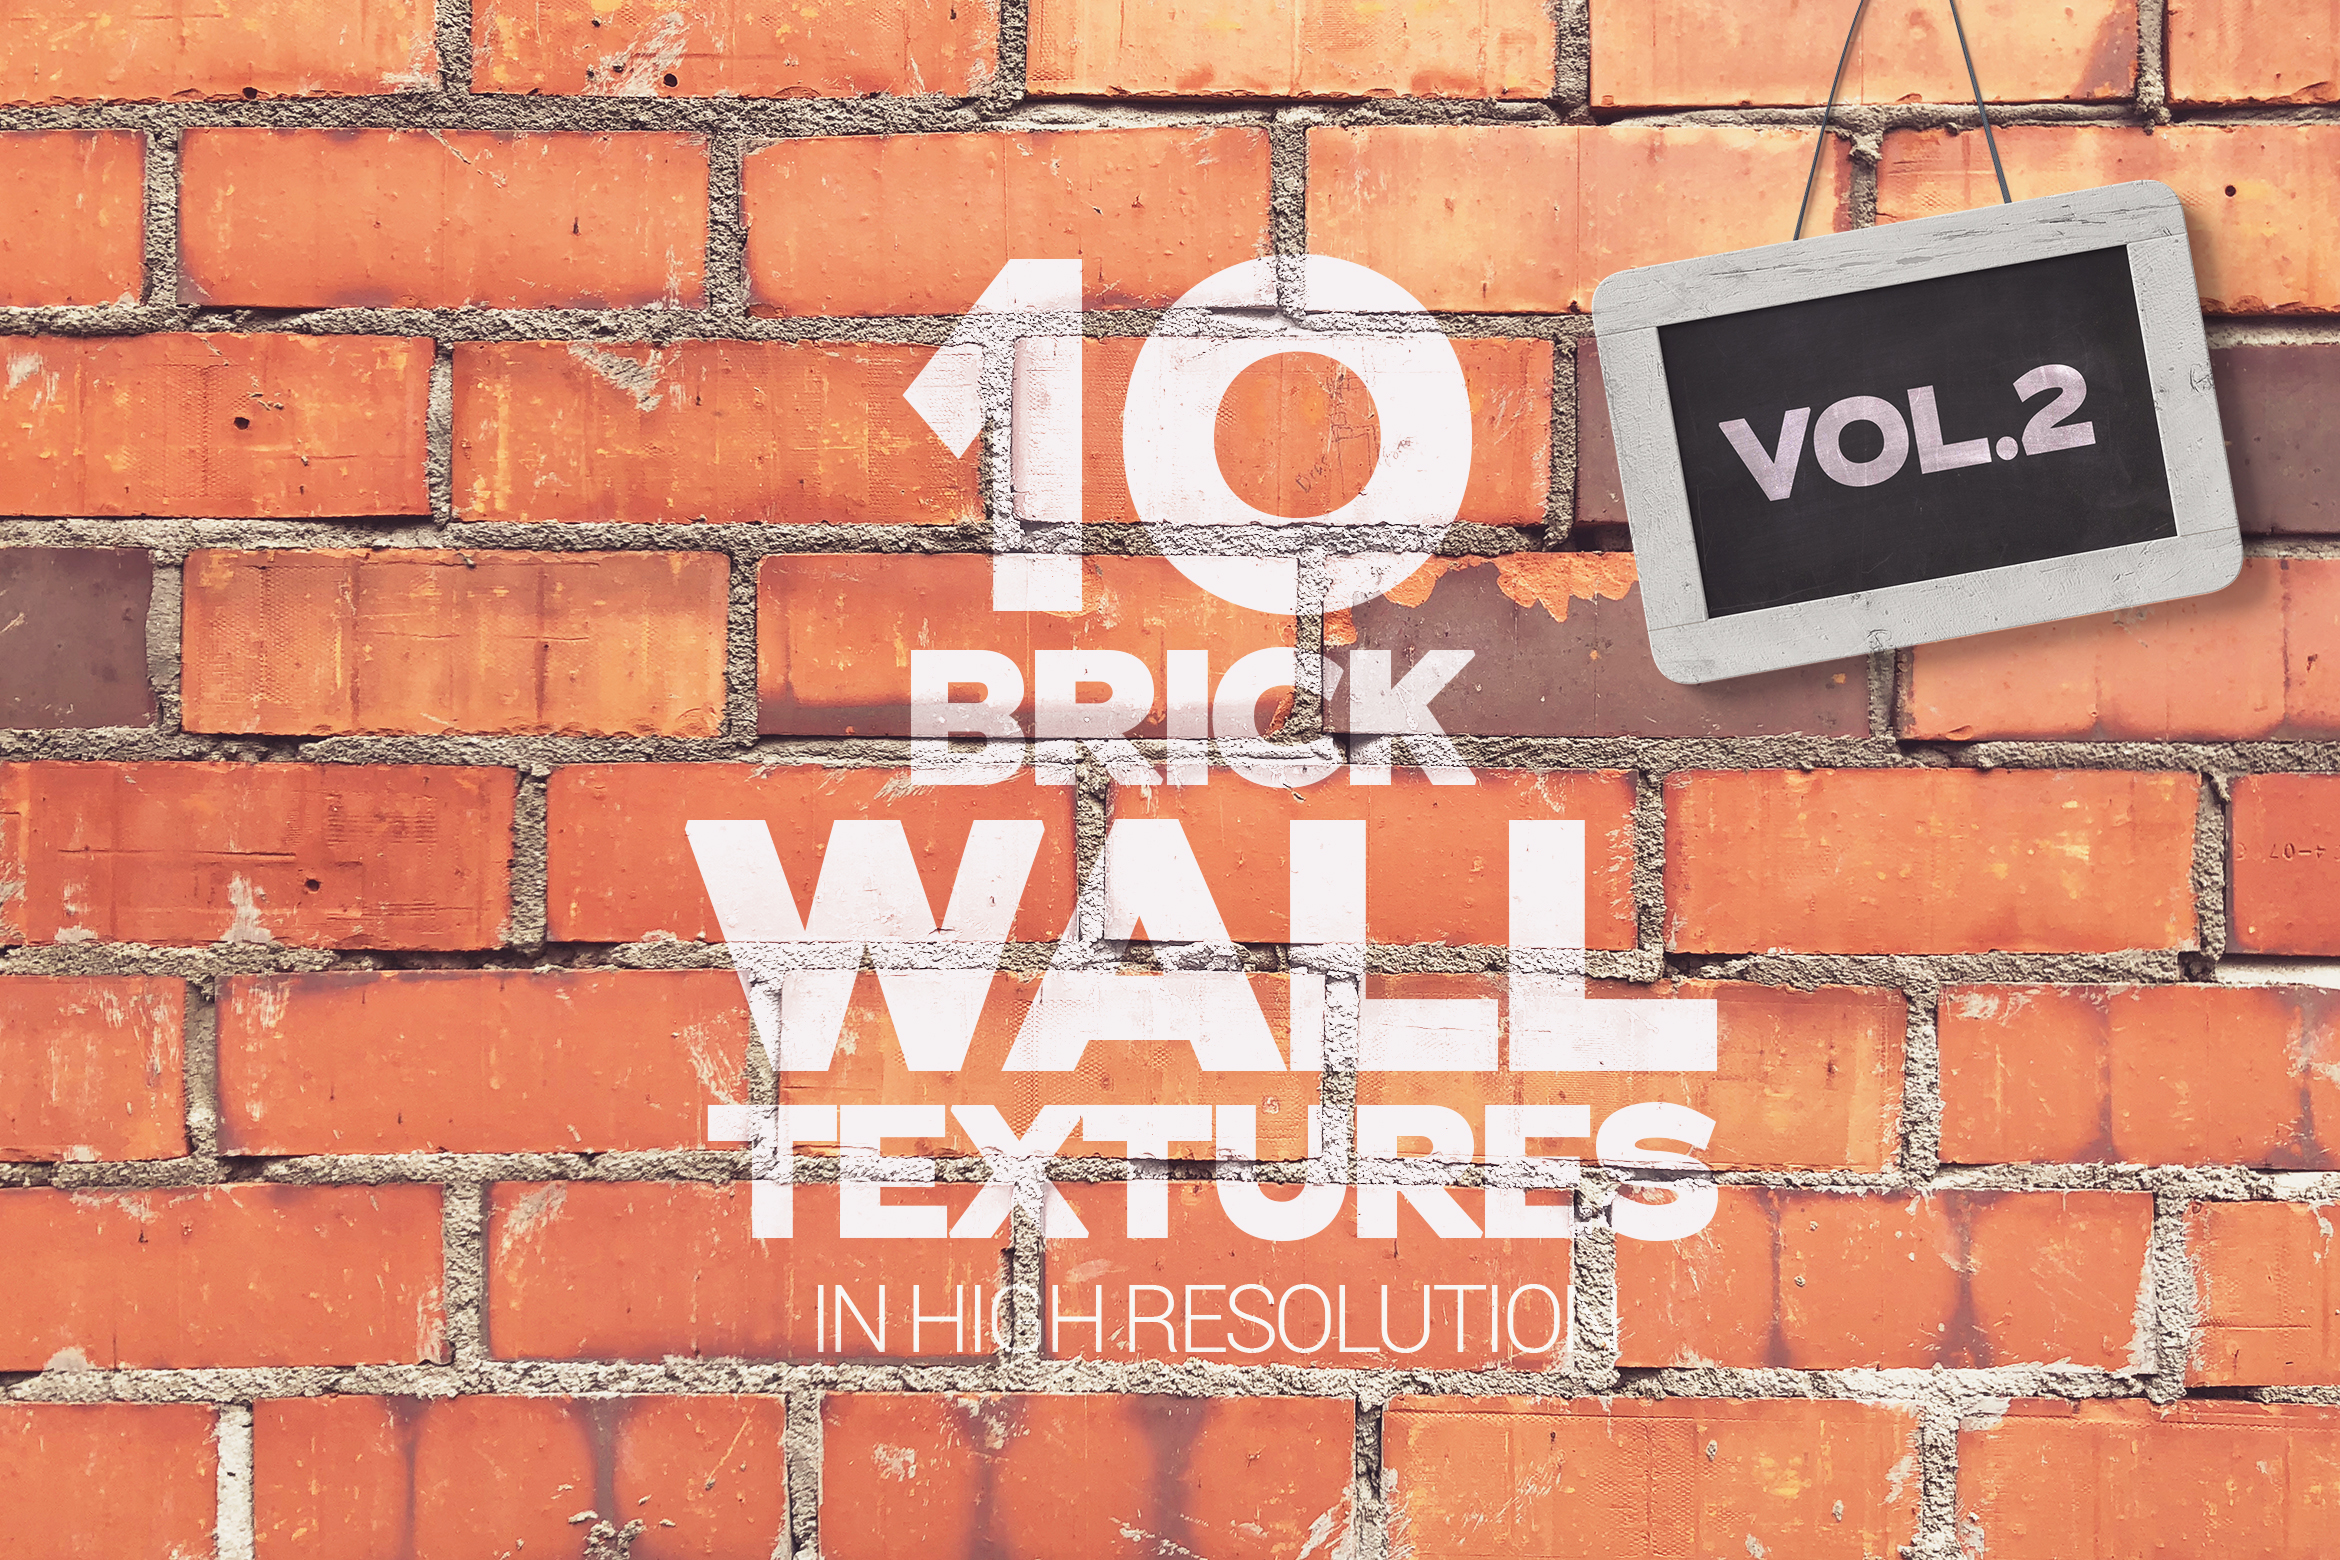 Brick Wall Textures Vol 2 x10